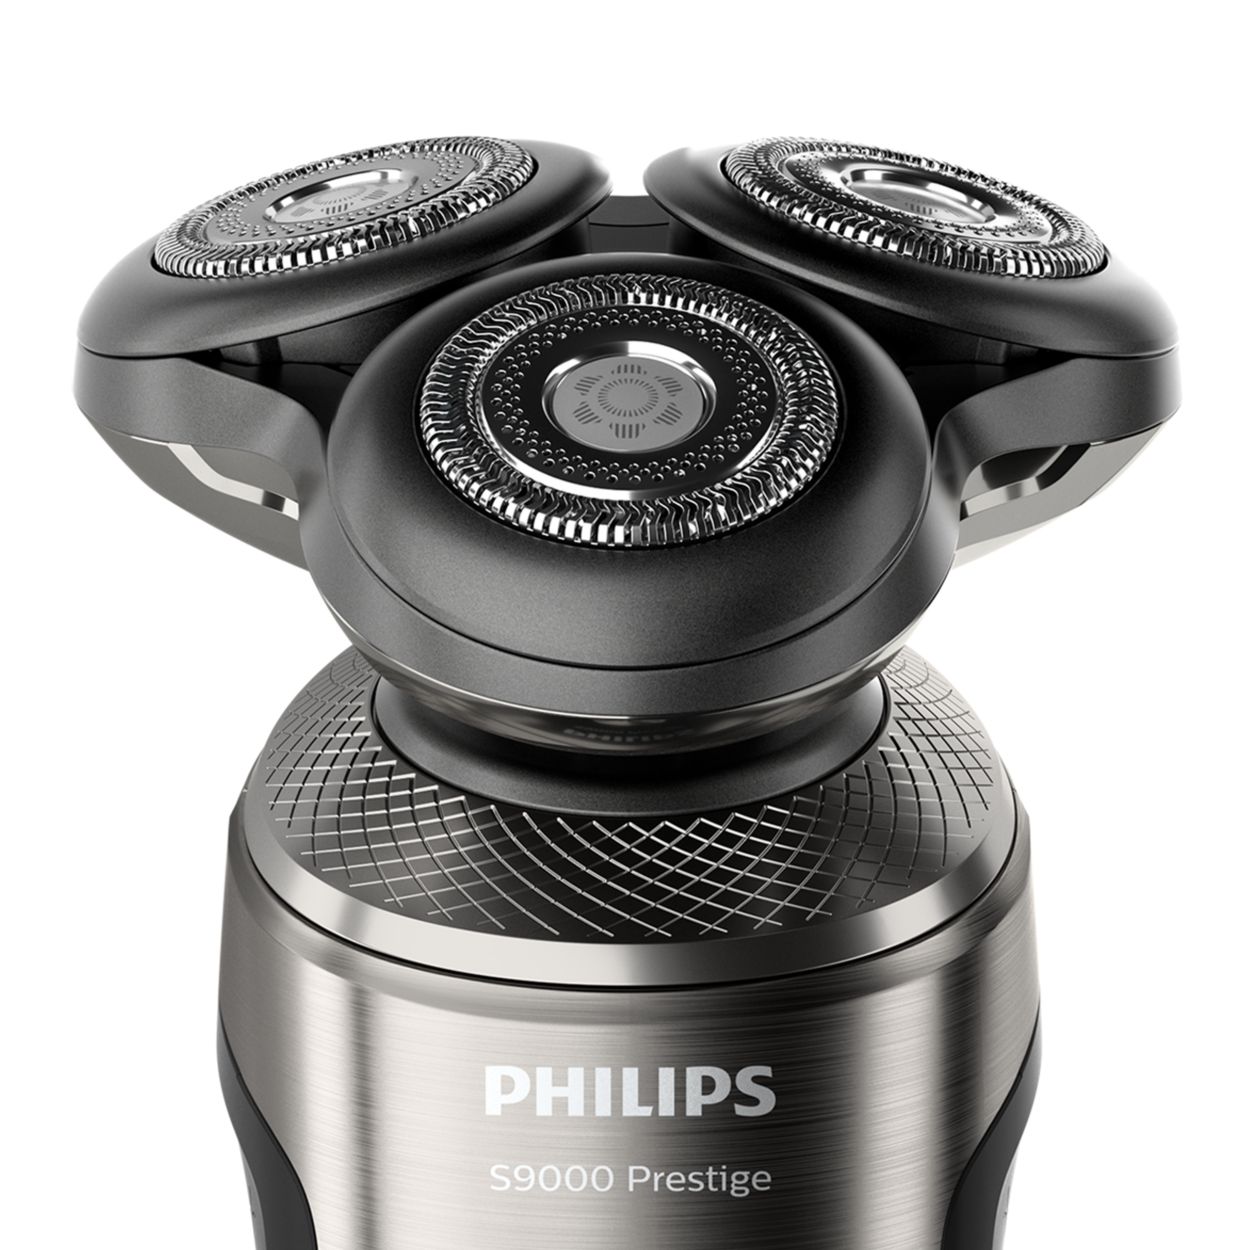 La S9000 Prestige de Philips, una afeitadora para todo tipo de barbas